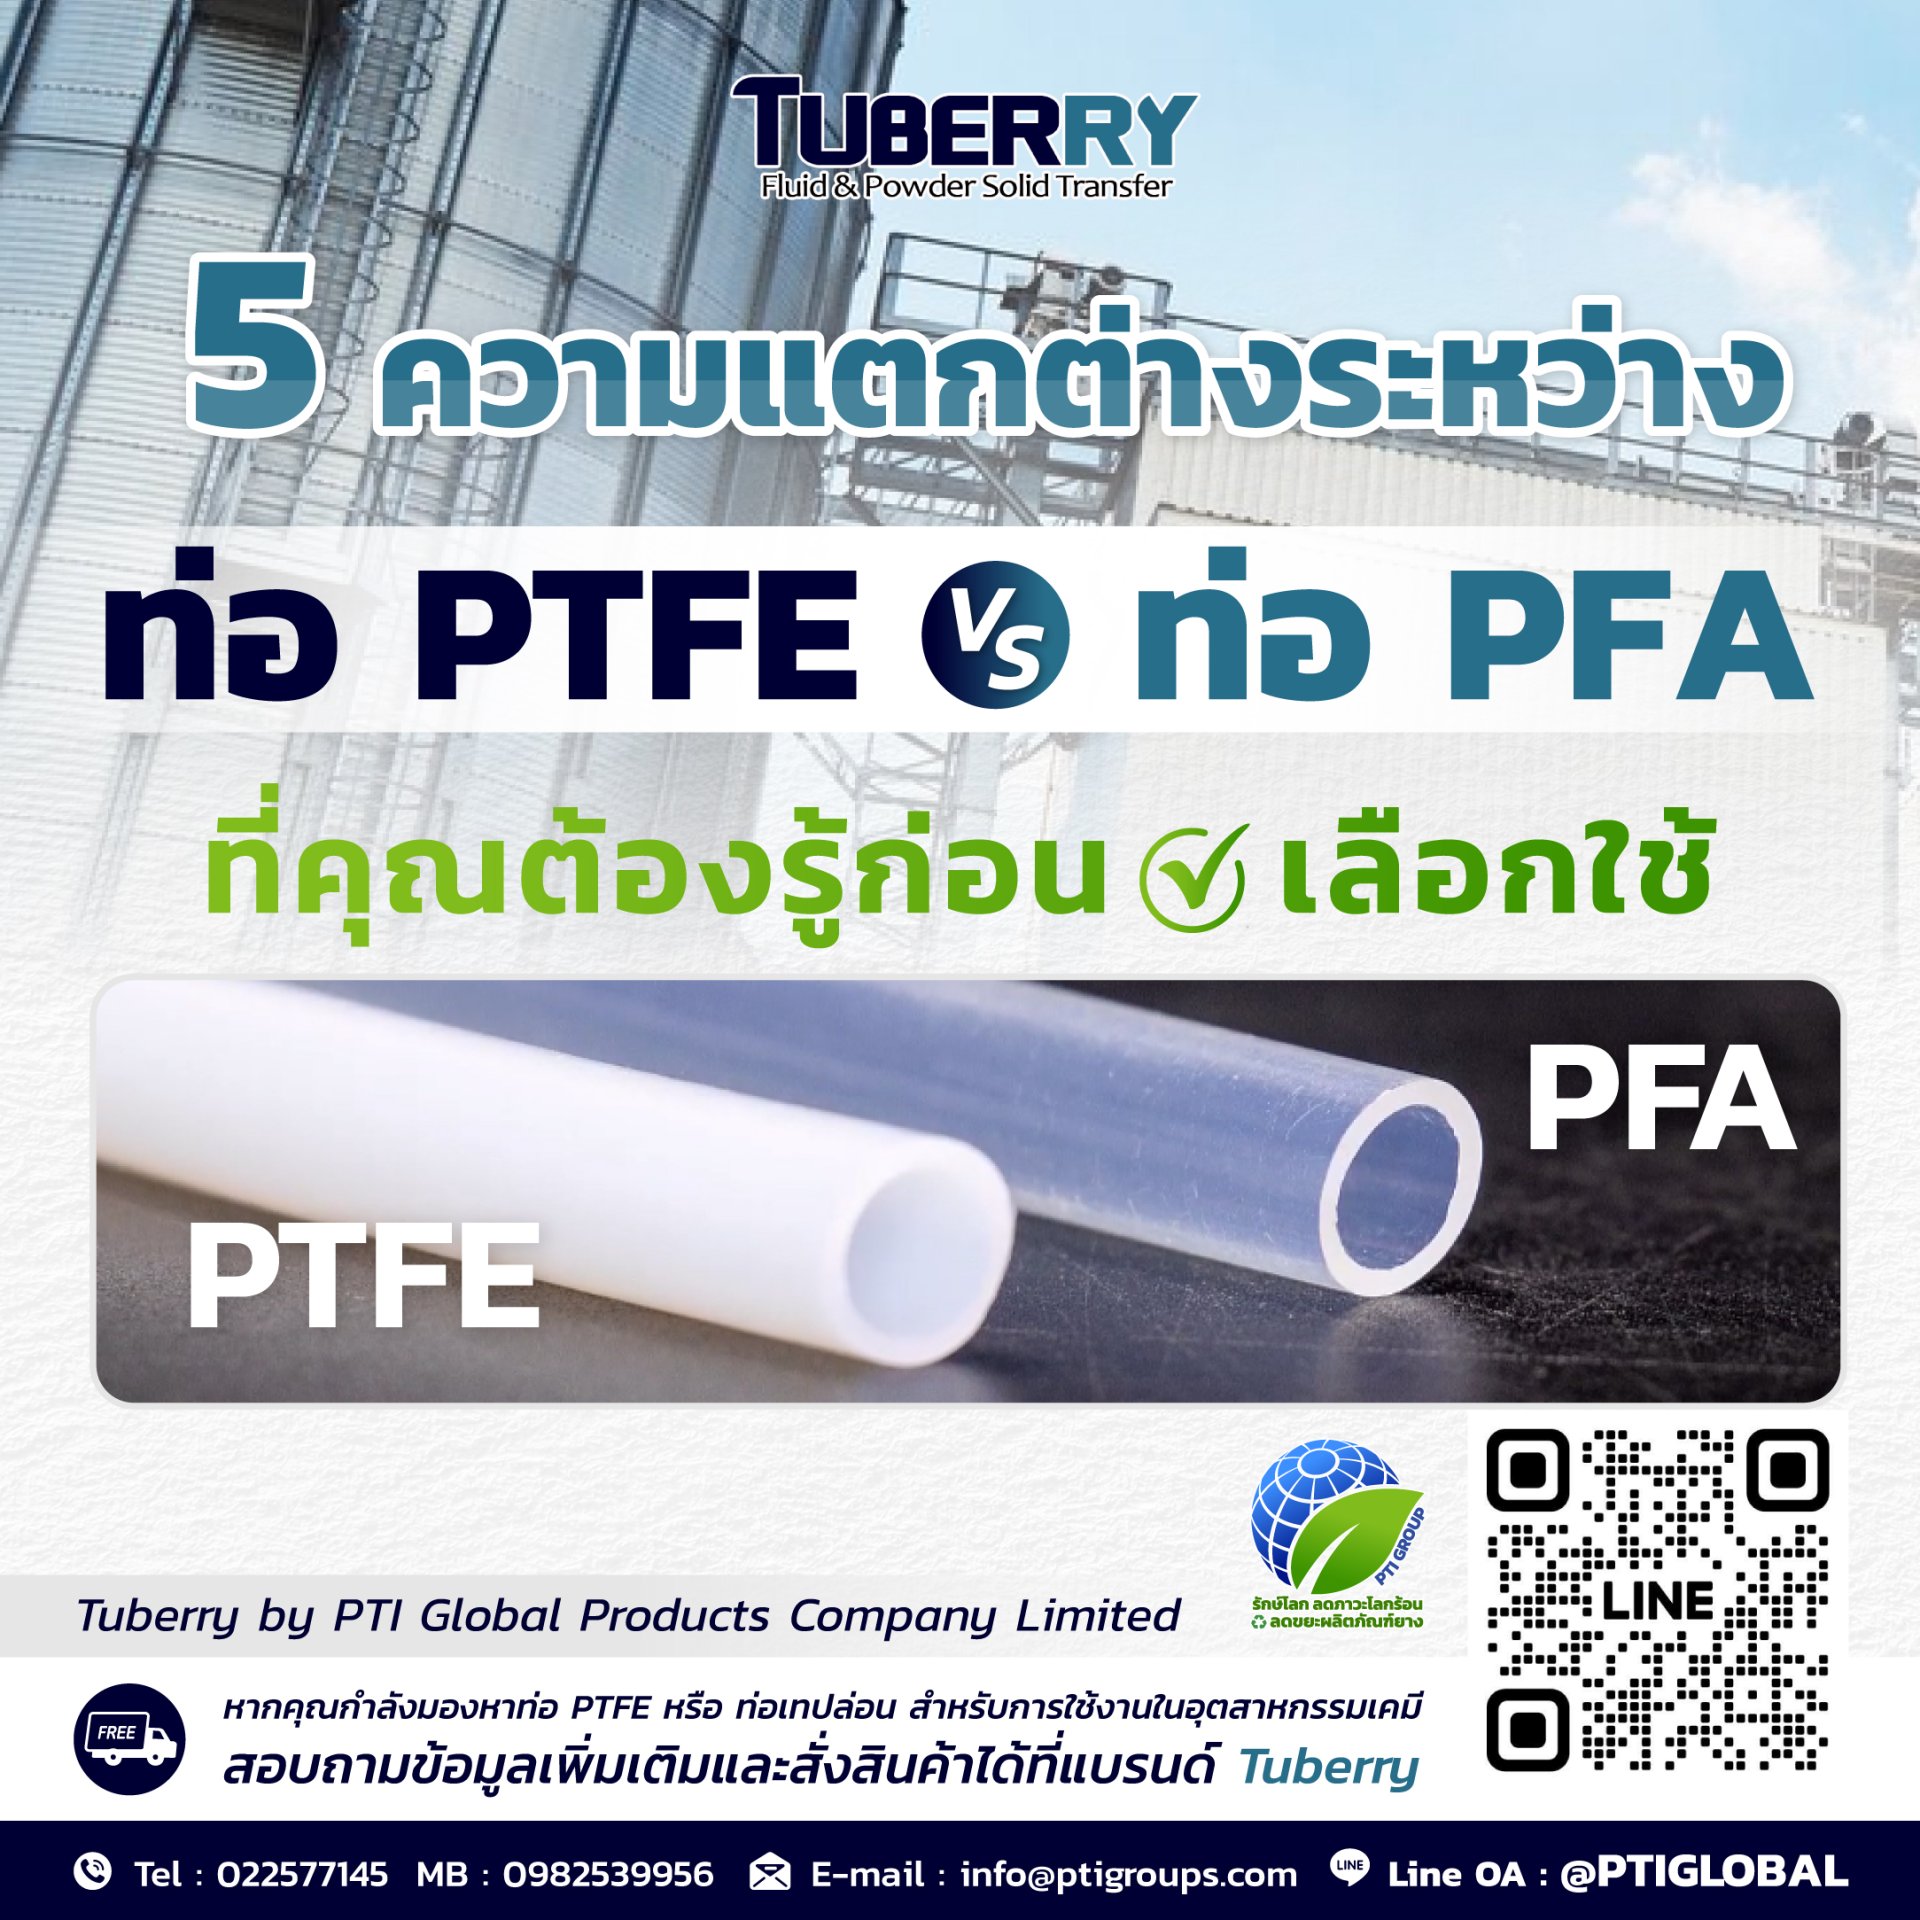 5 ความแตกต่างระหว่างท่อ PTFE และ ท่อ PFA ที่คุณต้องรู้ก่อนเลือกใช้